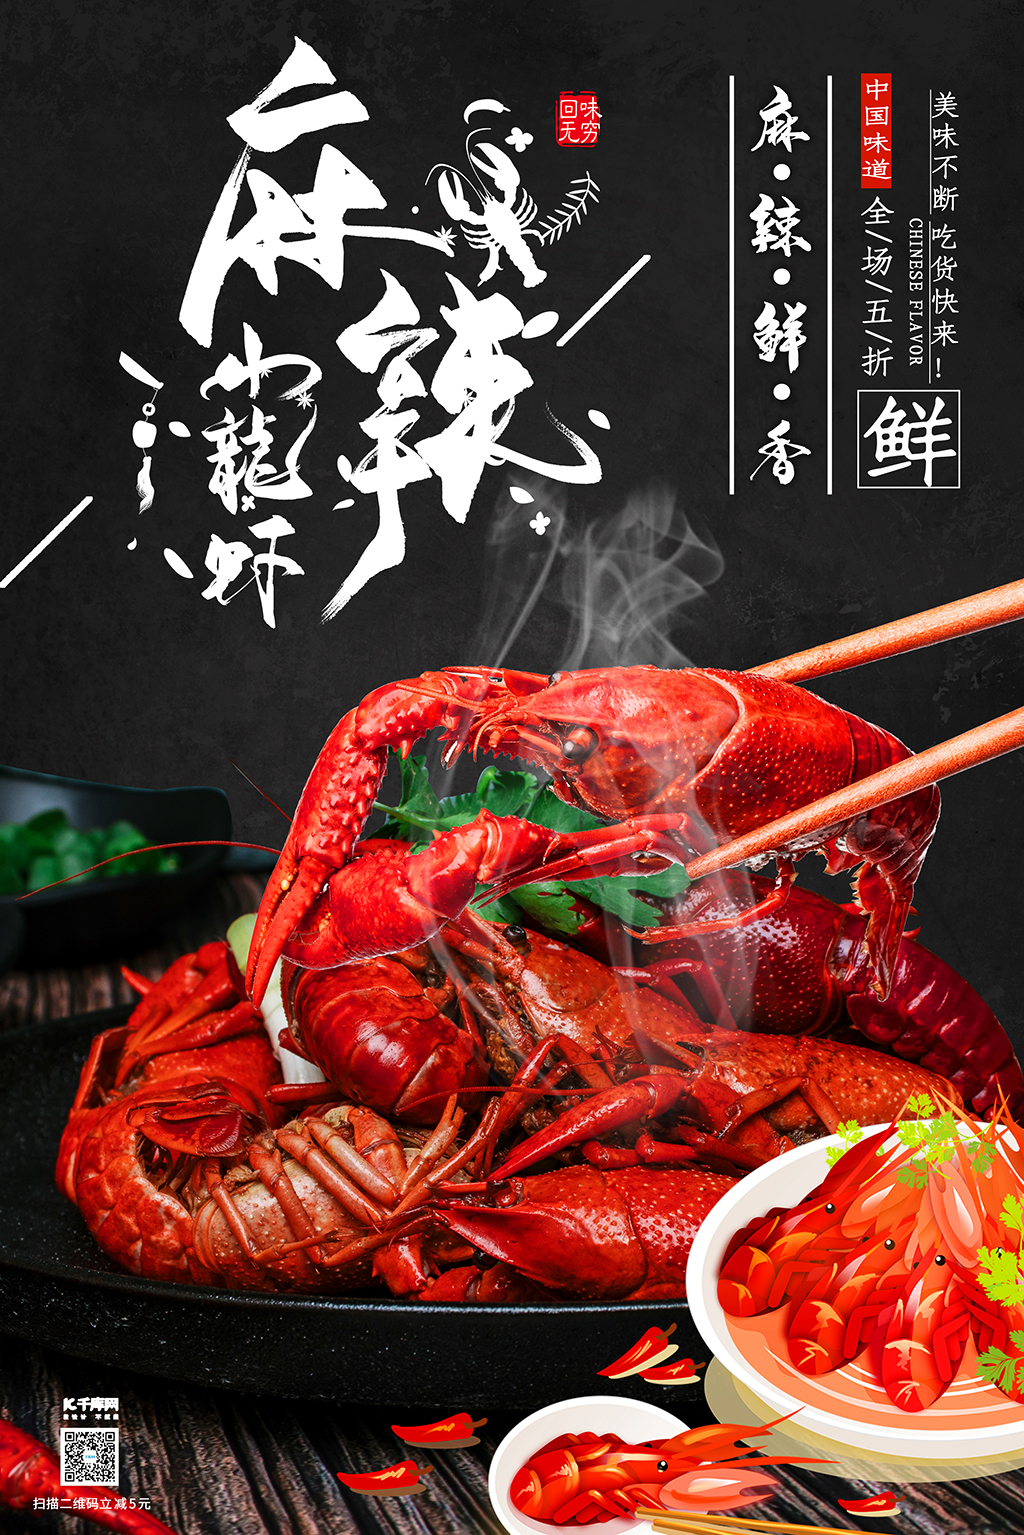 麻辣小龙虾无辣不欢美食促销大气黑色海报图片